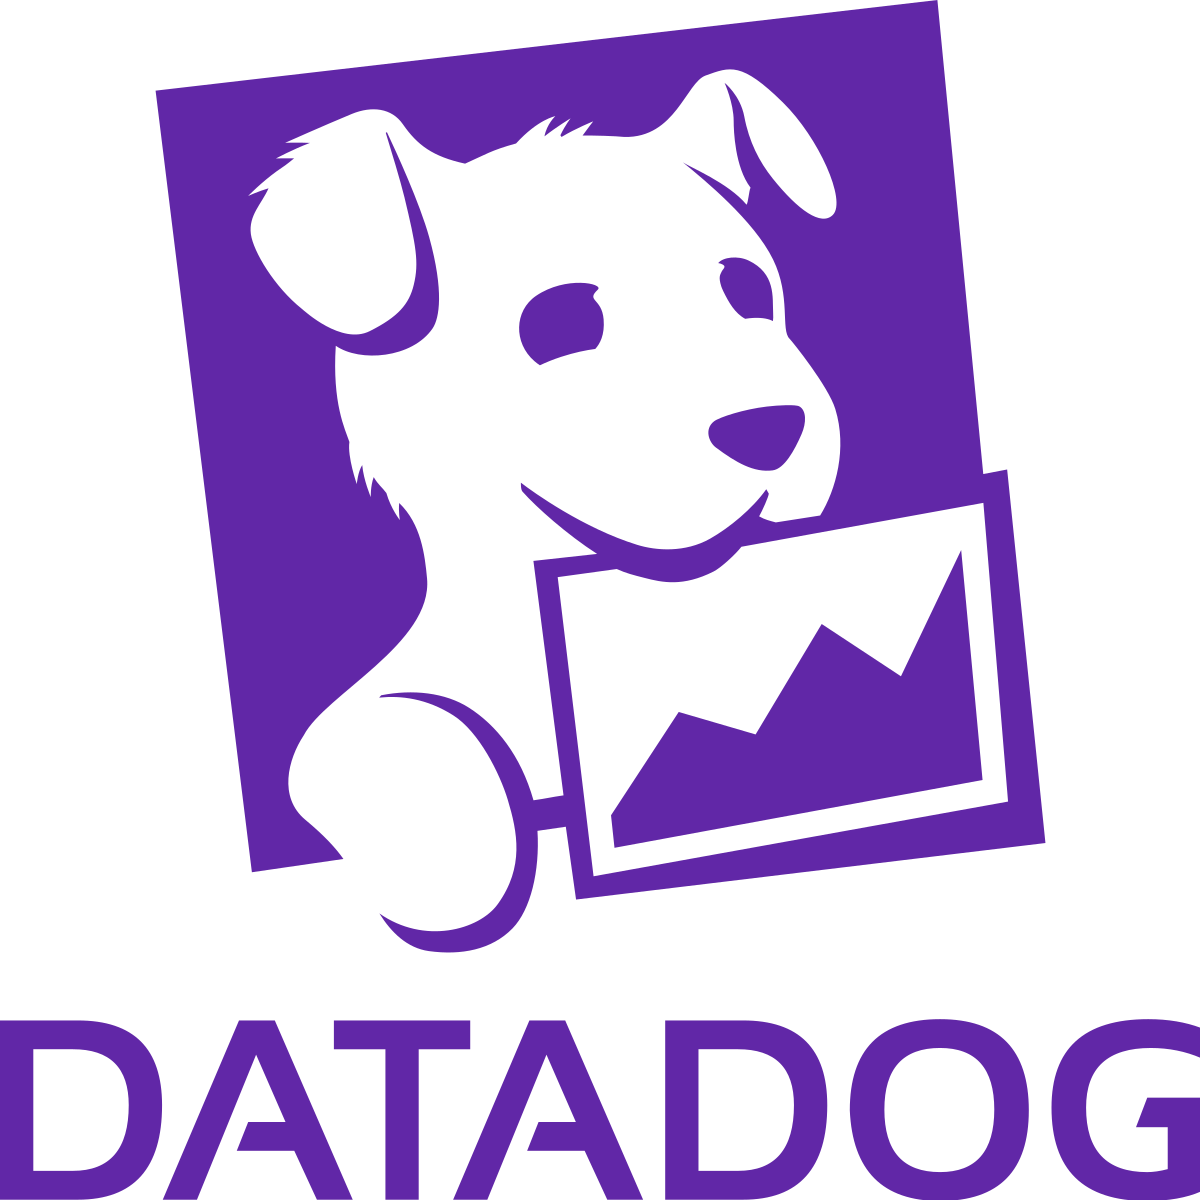 datadog-logo